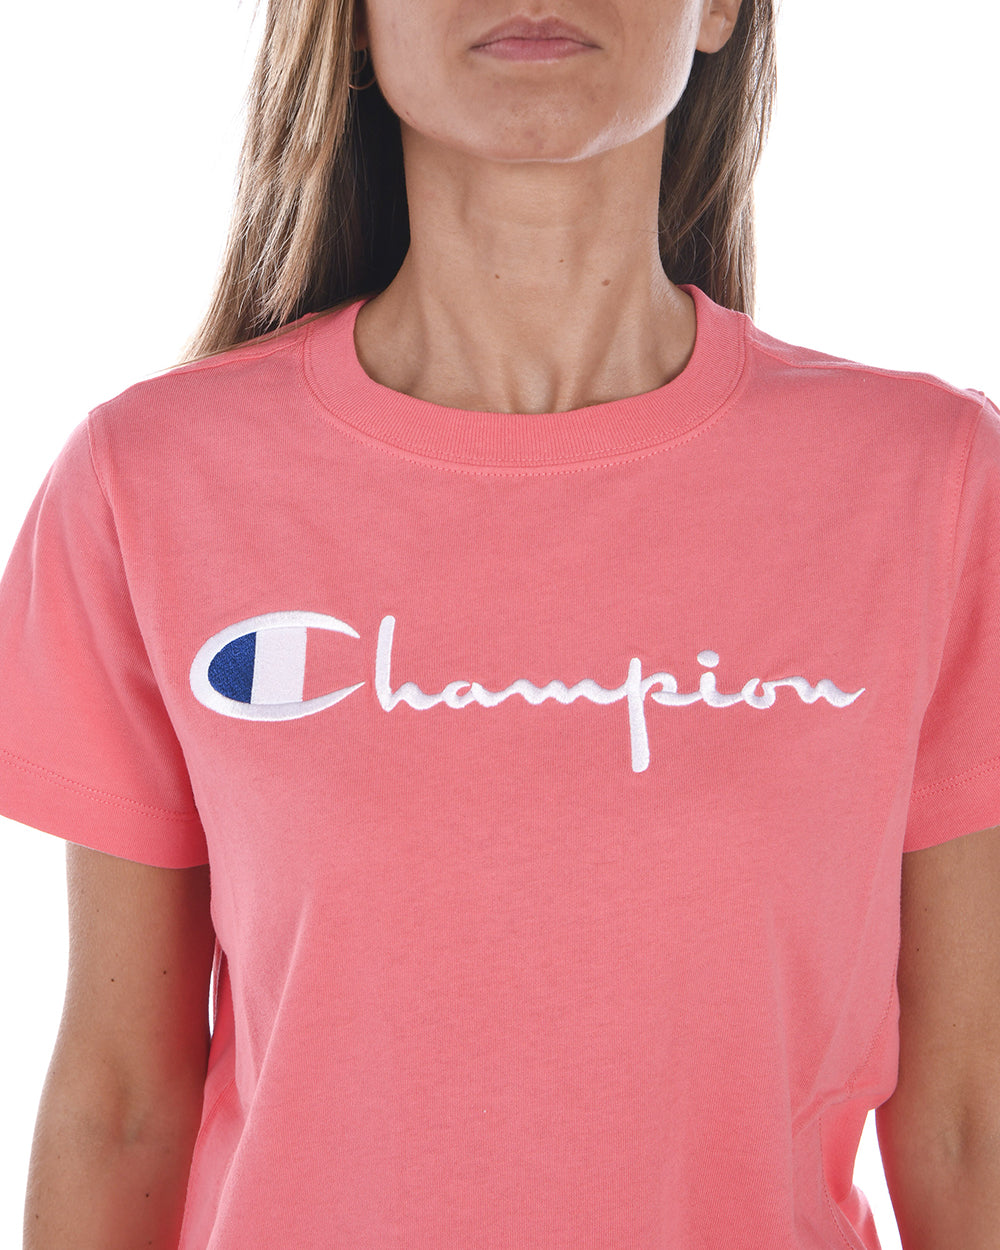 Maglietta Champion Logo Ricamato - Nera - mem39